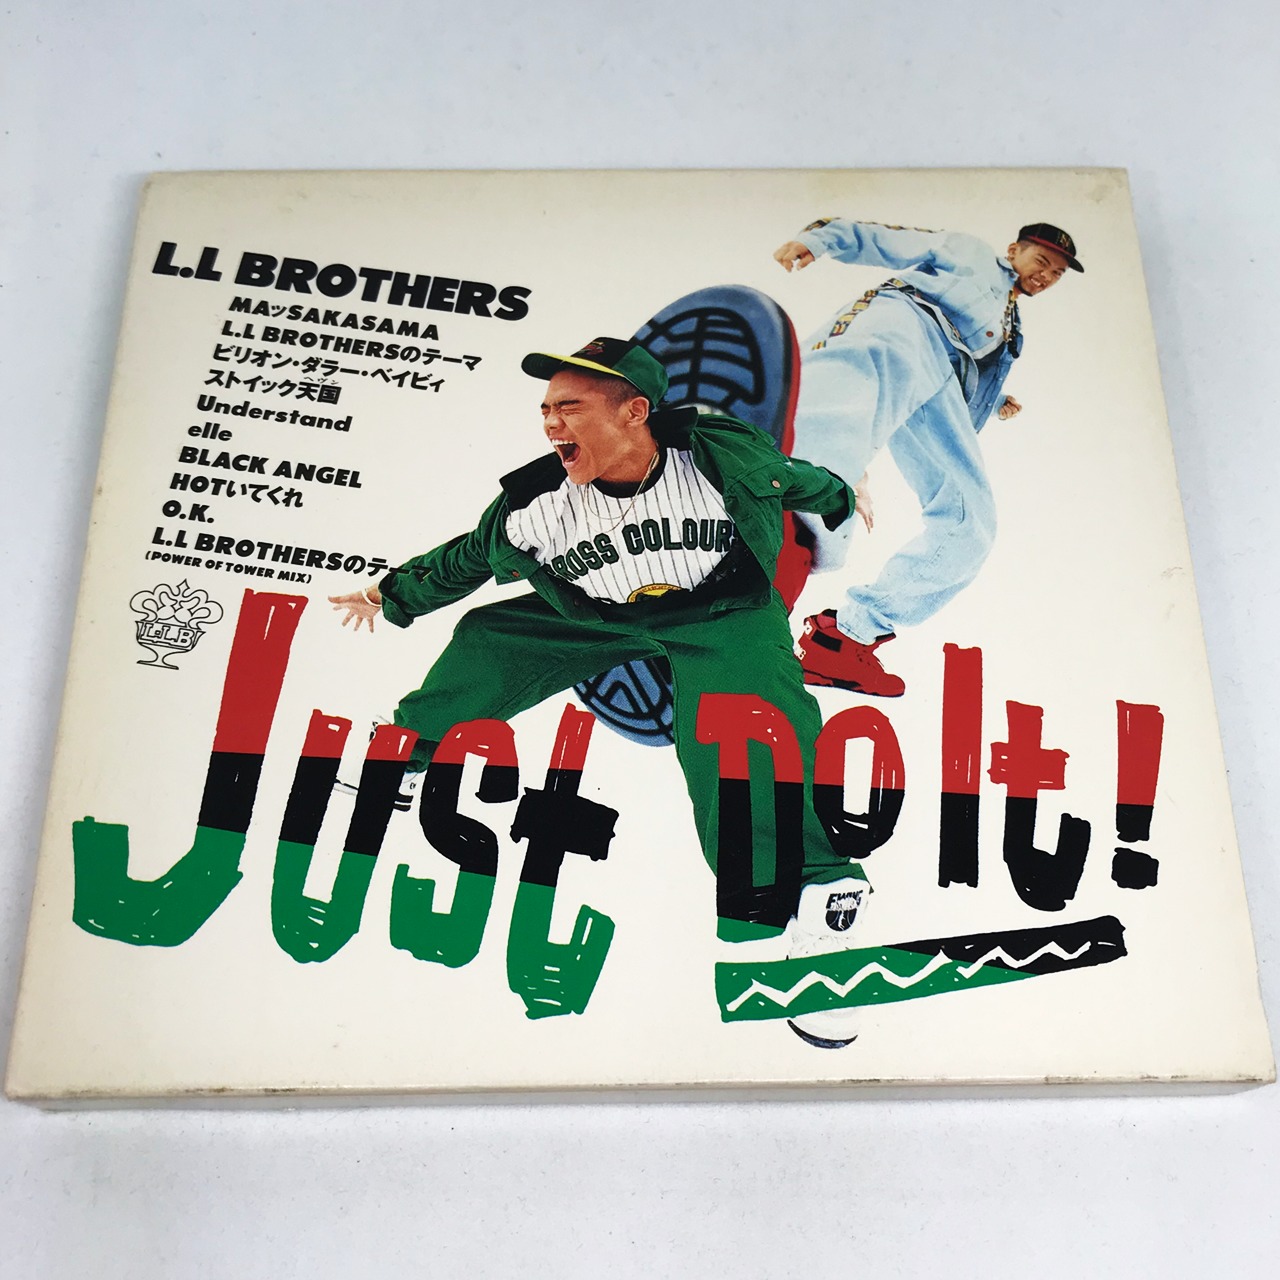 L.L BROTHERS / Just Do It!